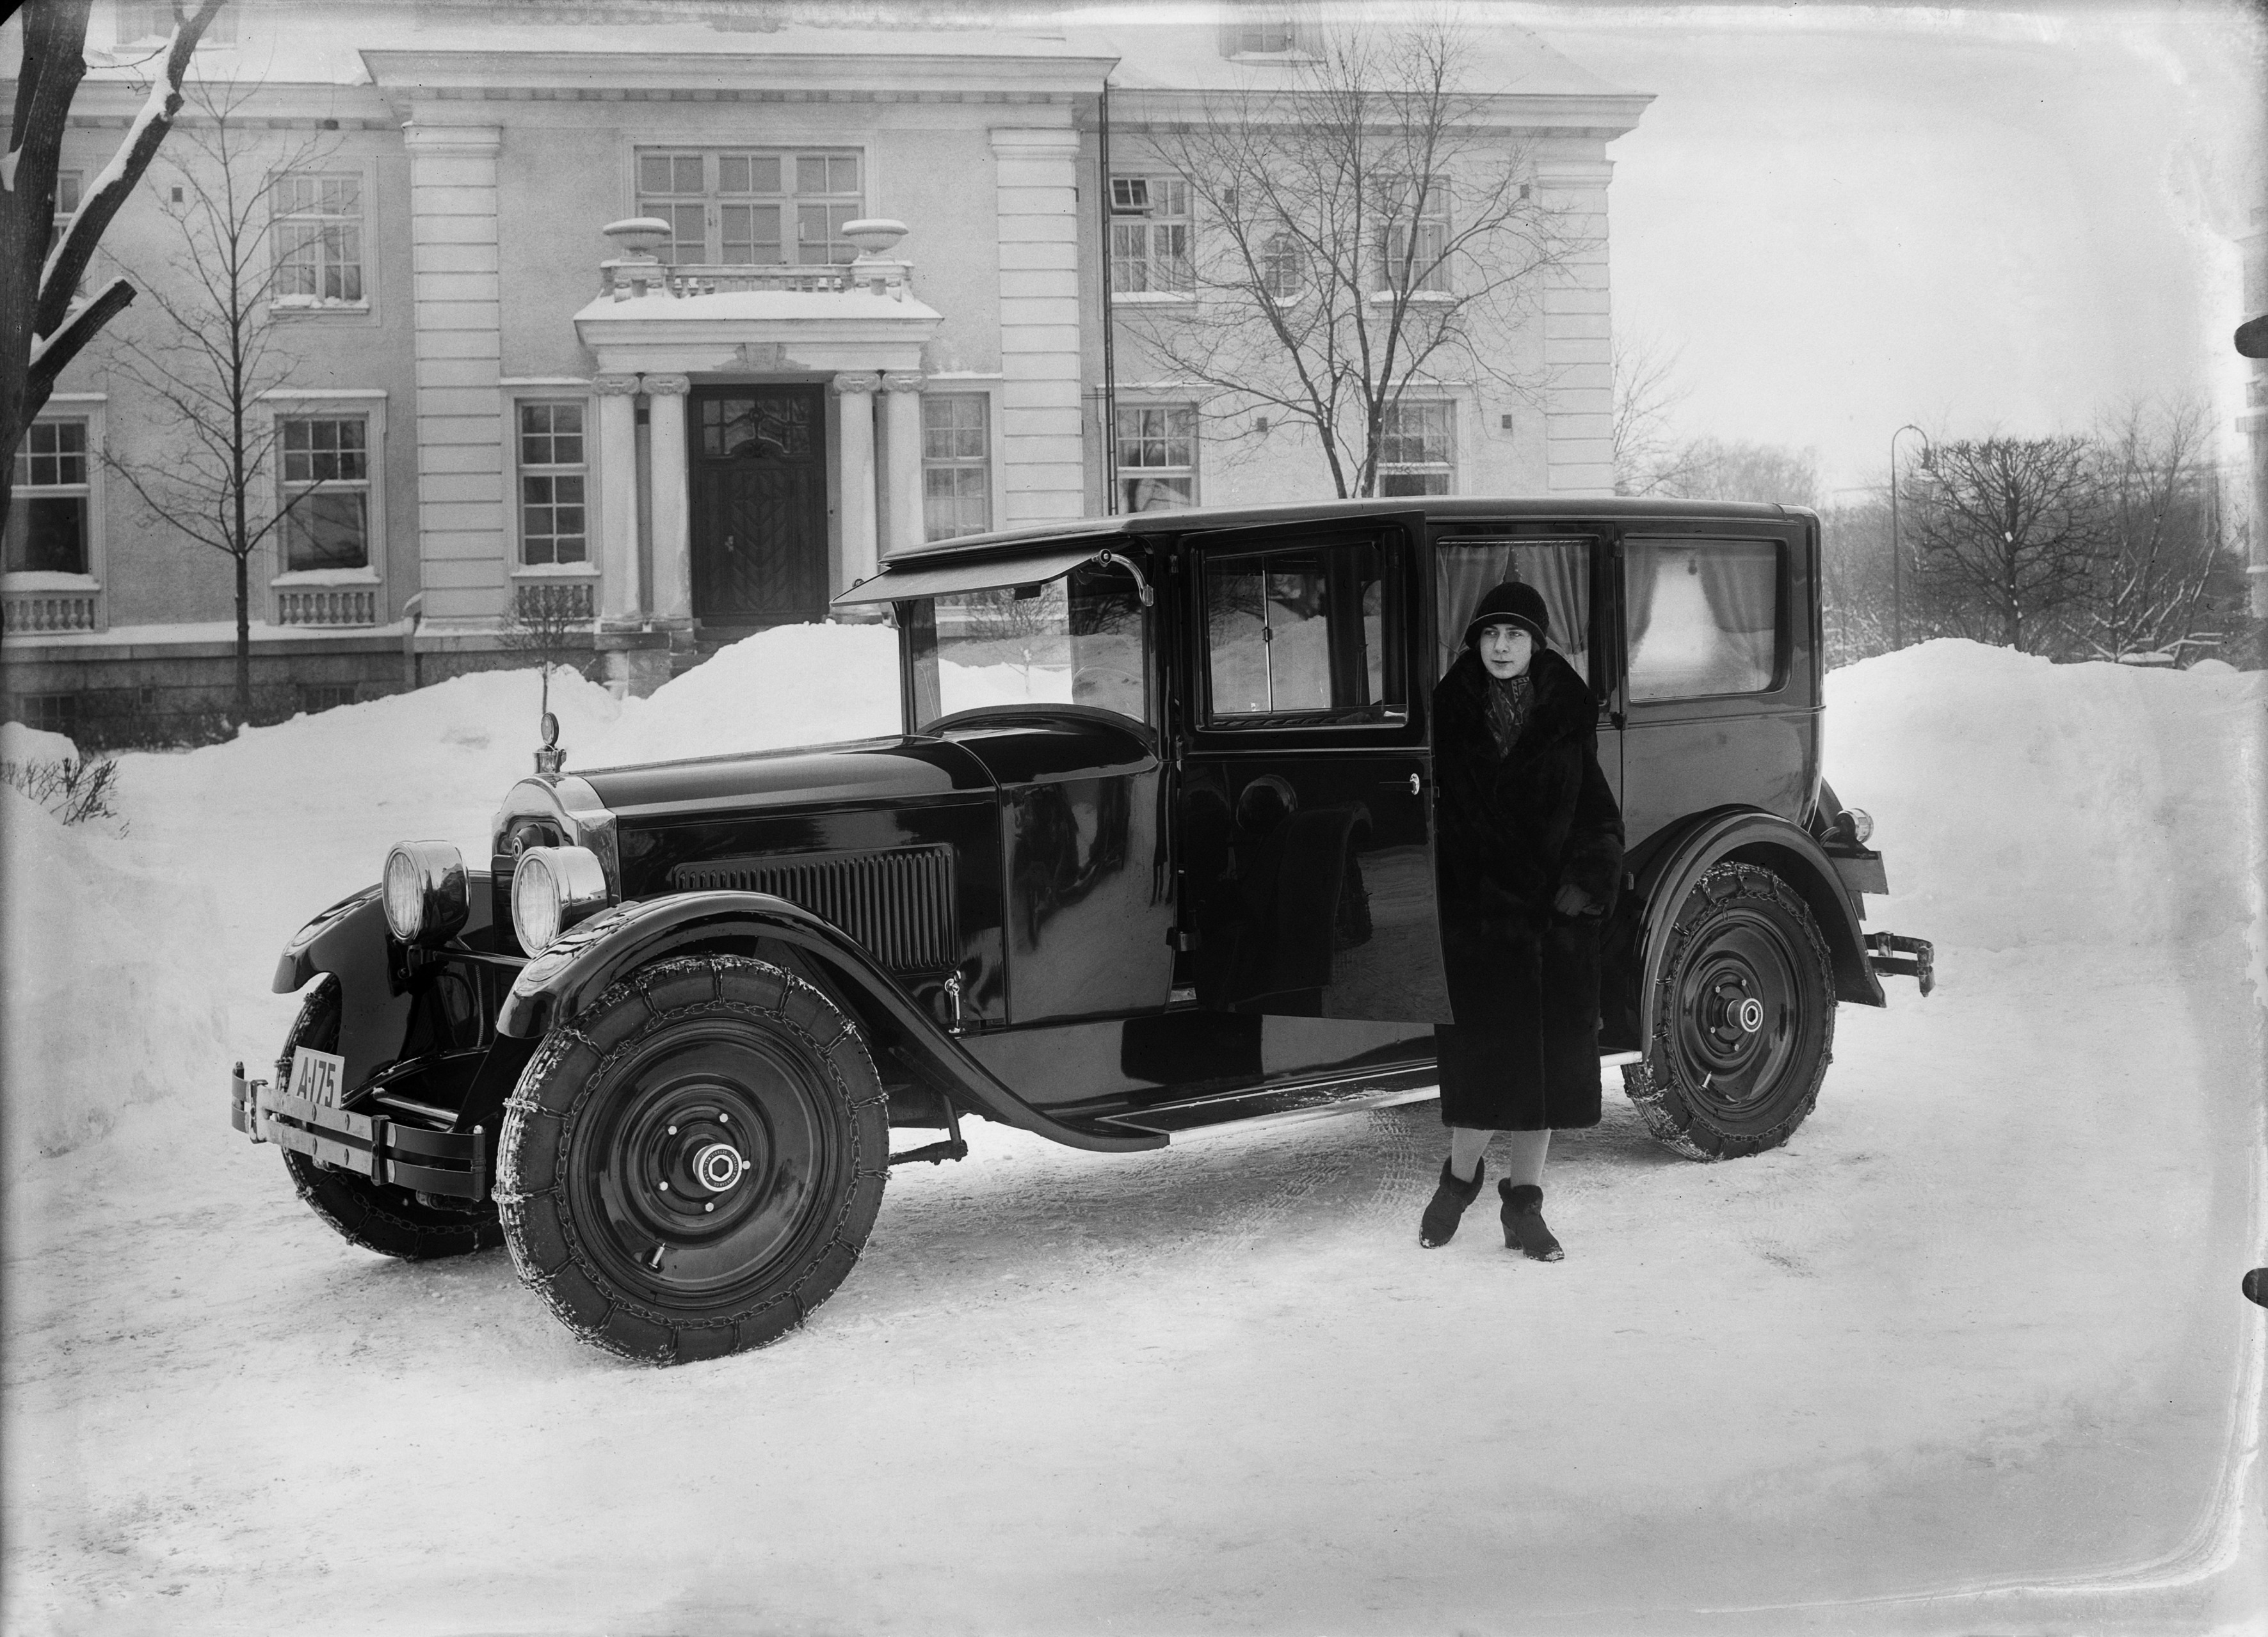 Henkiläauto (Packard 1926) Itäinen Puistotie 8 a:n pihalla